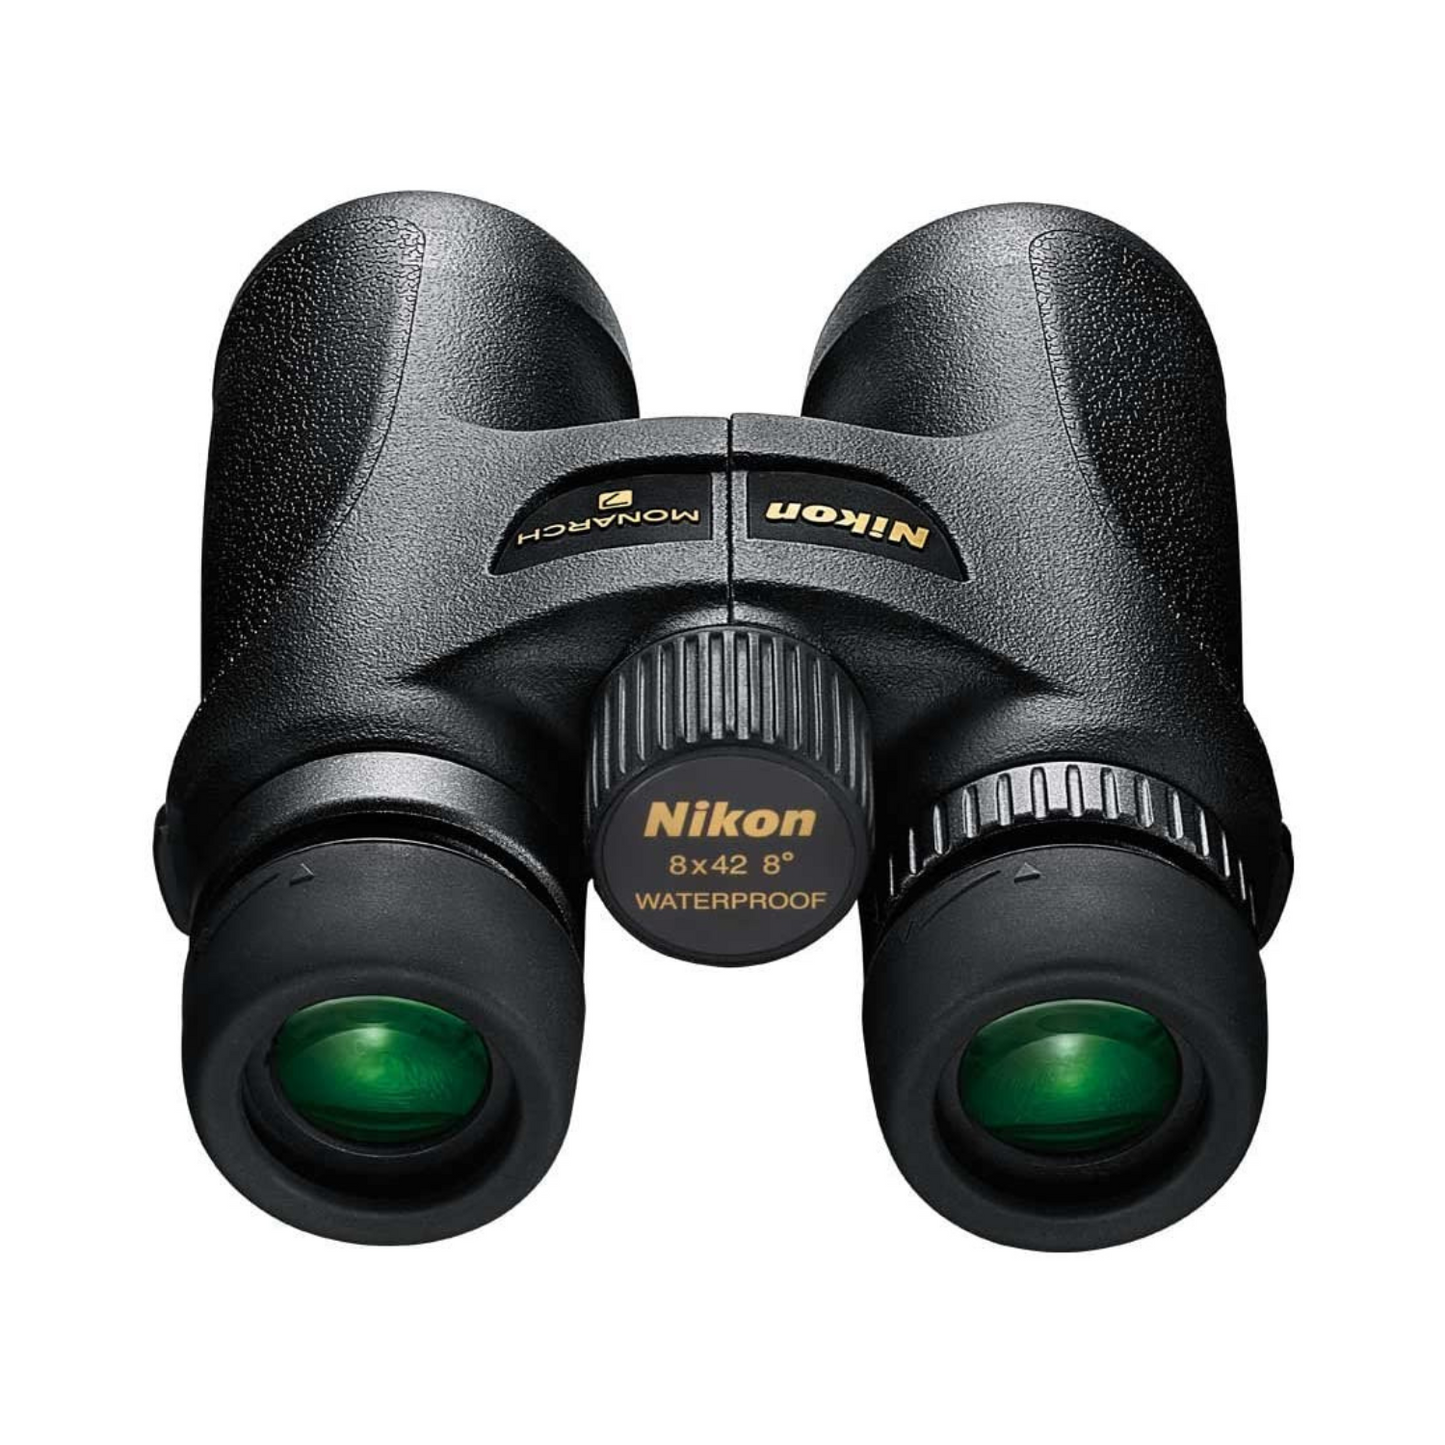 Nikon Monarch 7 8x42 Binocular (Black)